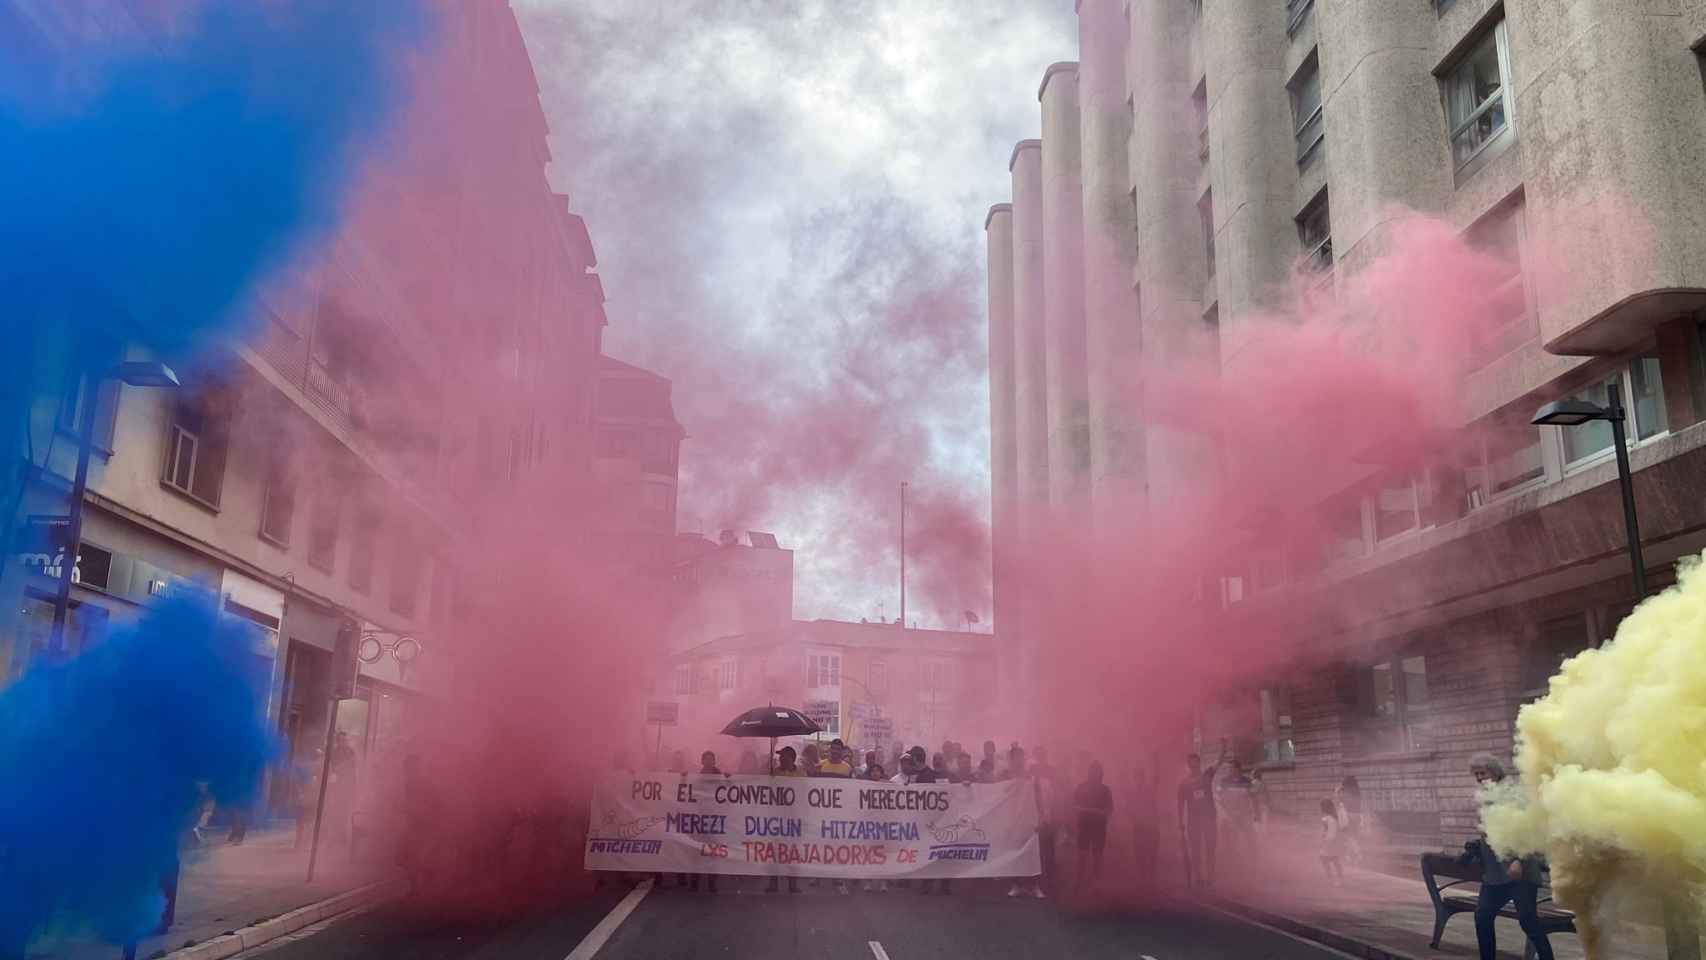 Al grito de ‘IPC sin trampas’, miles de personas han partido de la plaza Bilbao, de la capital vasca